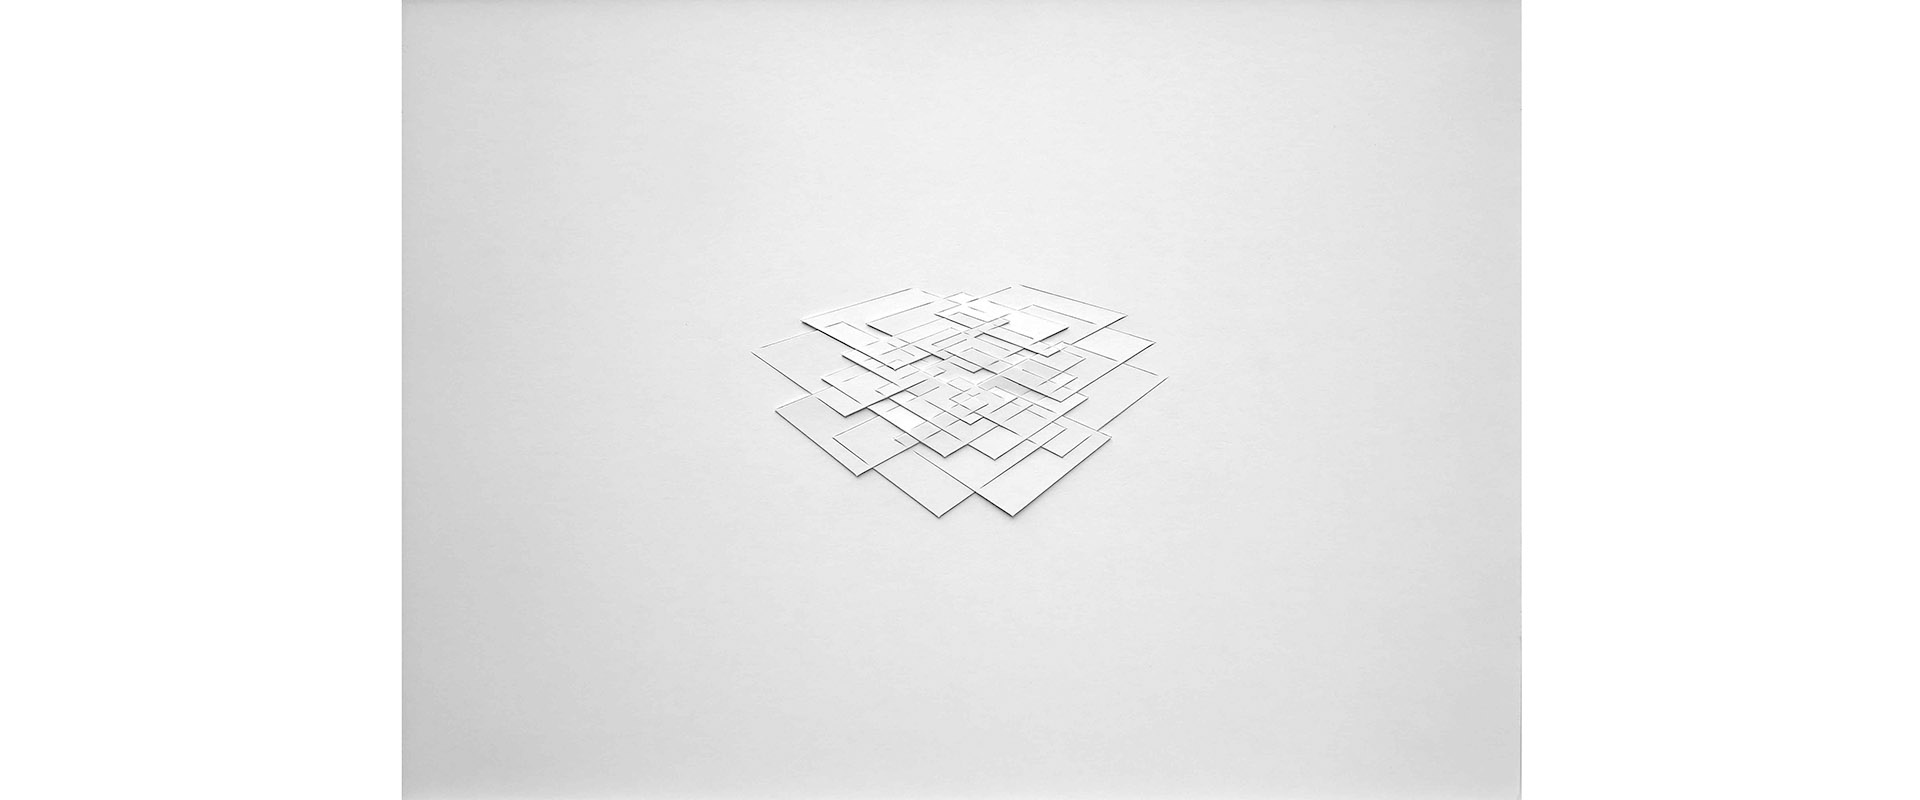 Raumverteilung I - 2020, Papierrelief, Karton geschnitten, 34 x 47 cm